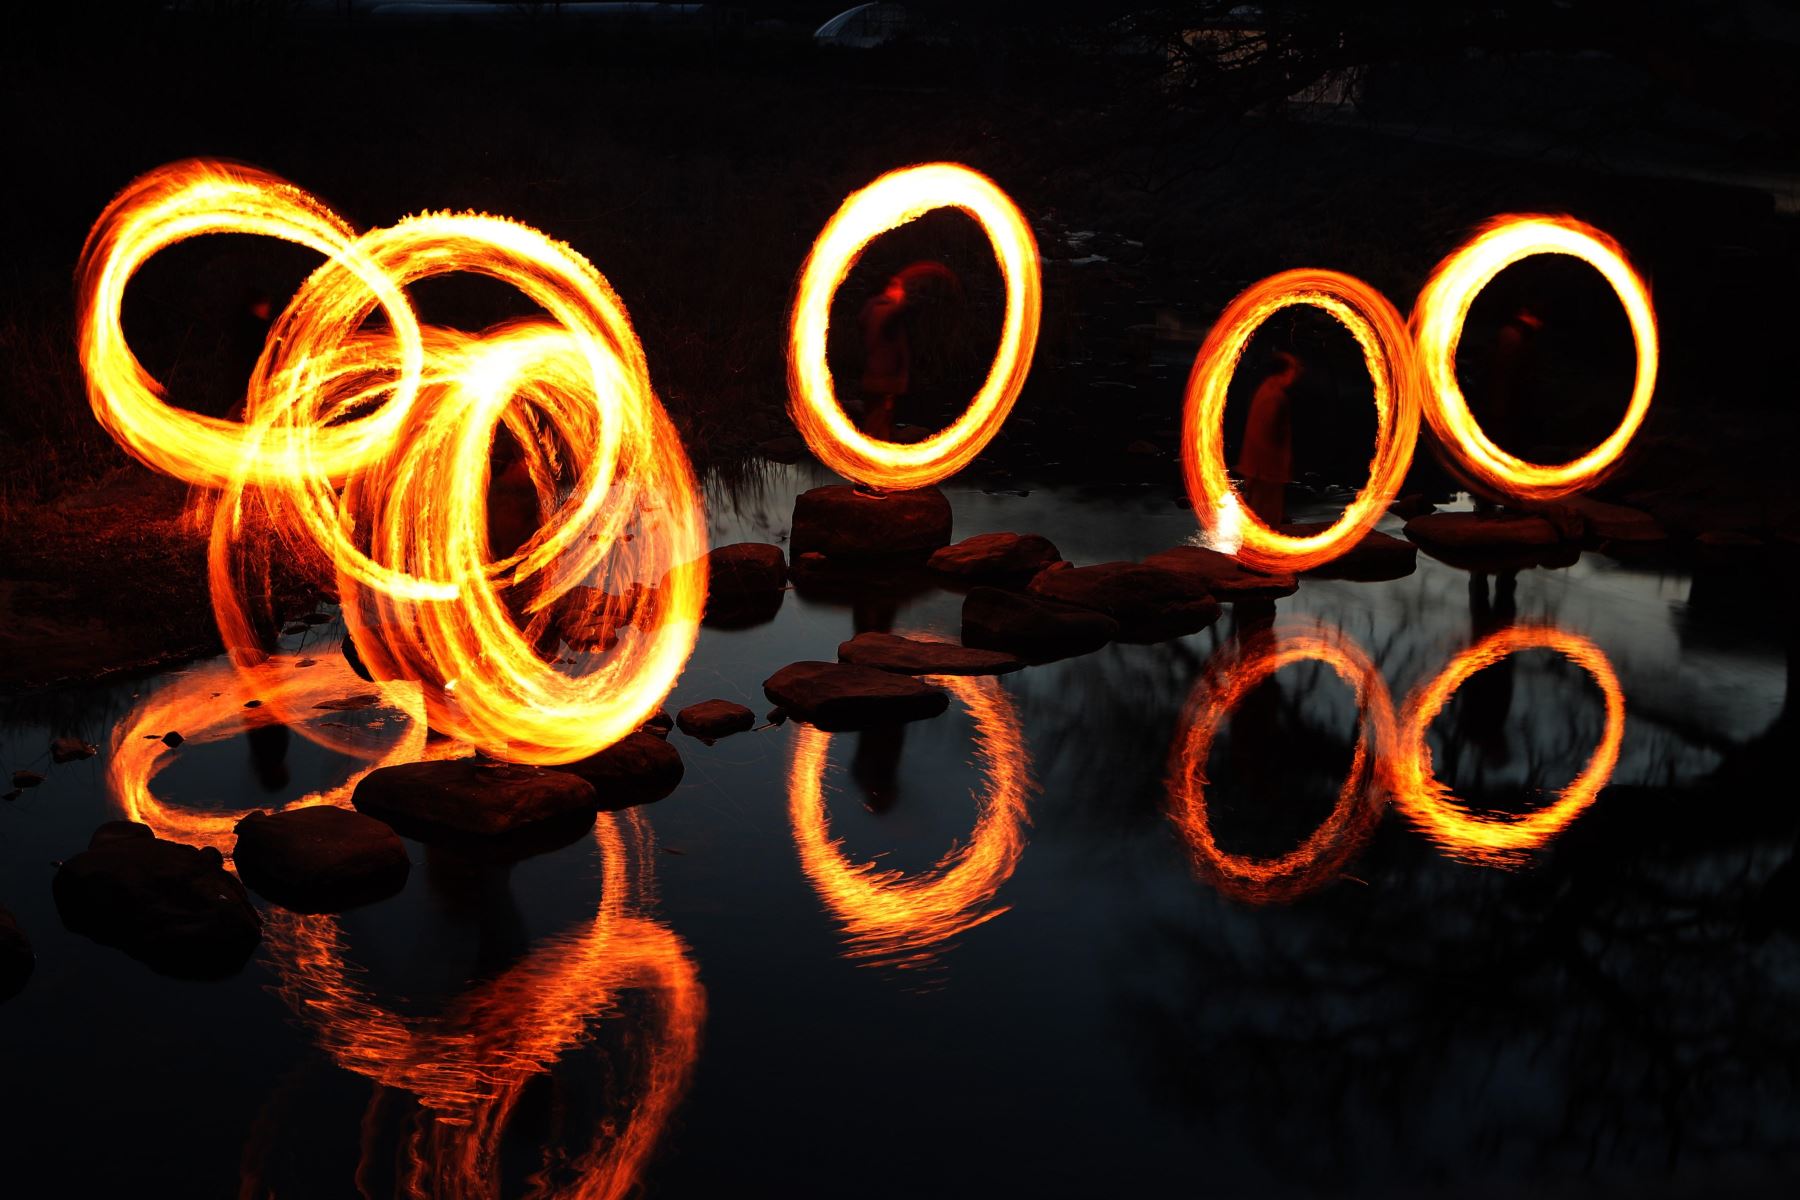 Un grupo de personas participa en el tradicional "jwibulnori", un juego tradicional, ayer jueves, en la vÌspera de la primera luna llena del Año Nuevo Lunar, en Gwangju (Corea del Sur). El juego, en el que las personas giran alrededor de quemadores llenos de carbones en los arrozales, está diseñado principalmente para ahuyentar los malos espíritus y la mala suerte. Foto: EFE